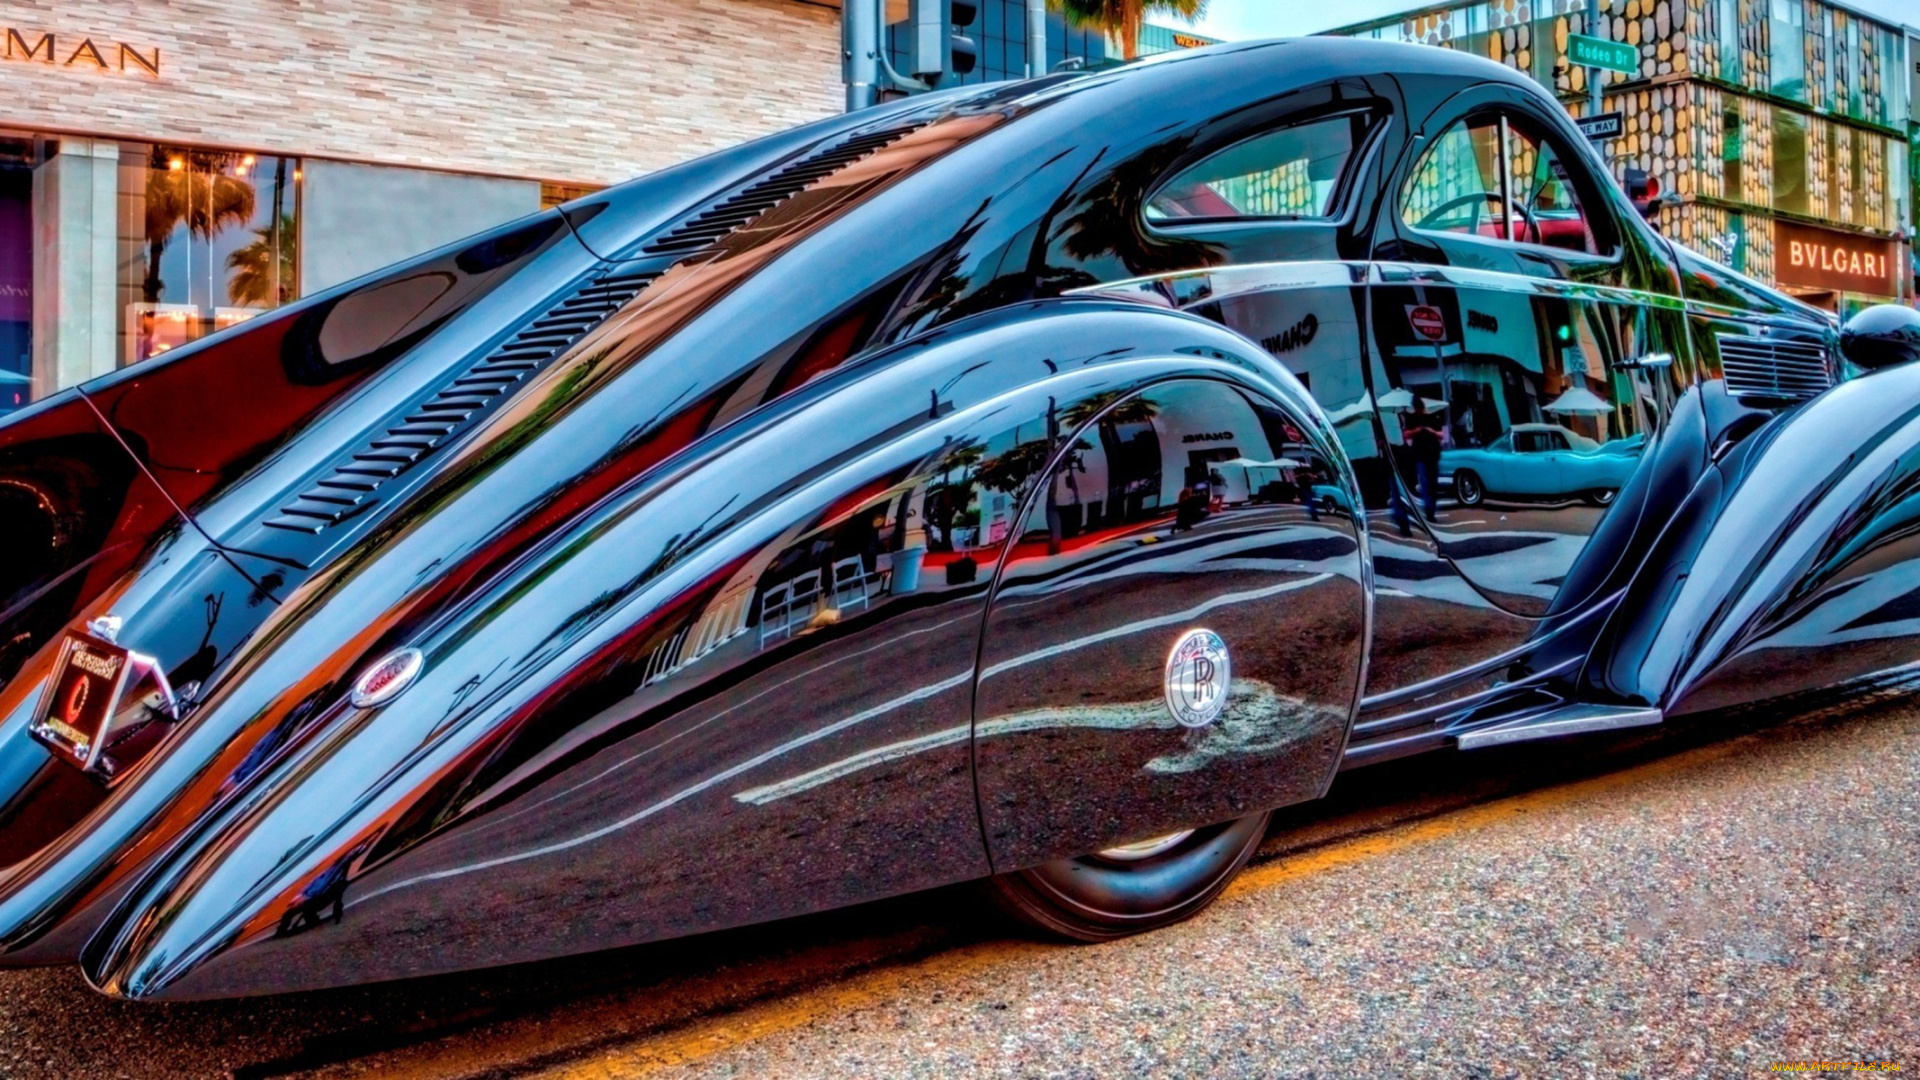 rolls-royce, phantom, i, jonckheere, aerodynamic, coupe, 1925, автомобили, выставки, и, уличные, фото, phantom, rolls-royce, i, jonckheere, aerodynamic, coupe, 1925